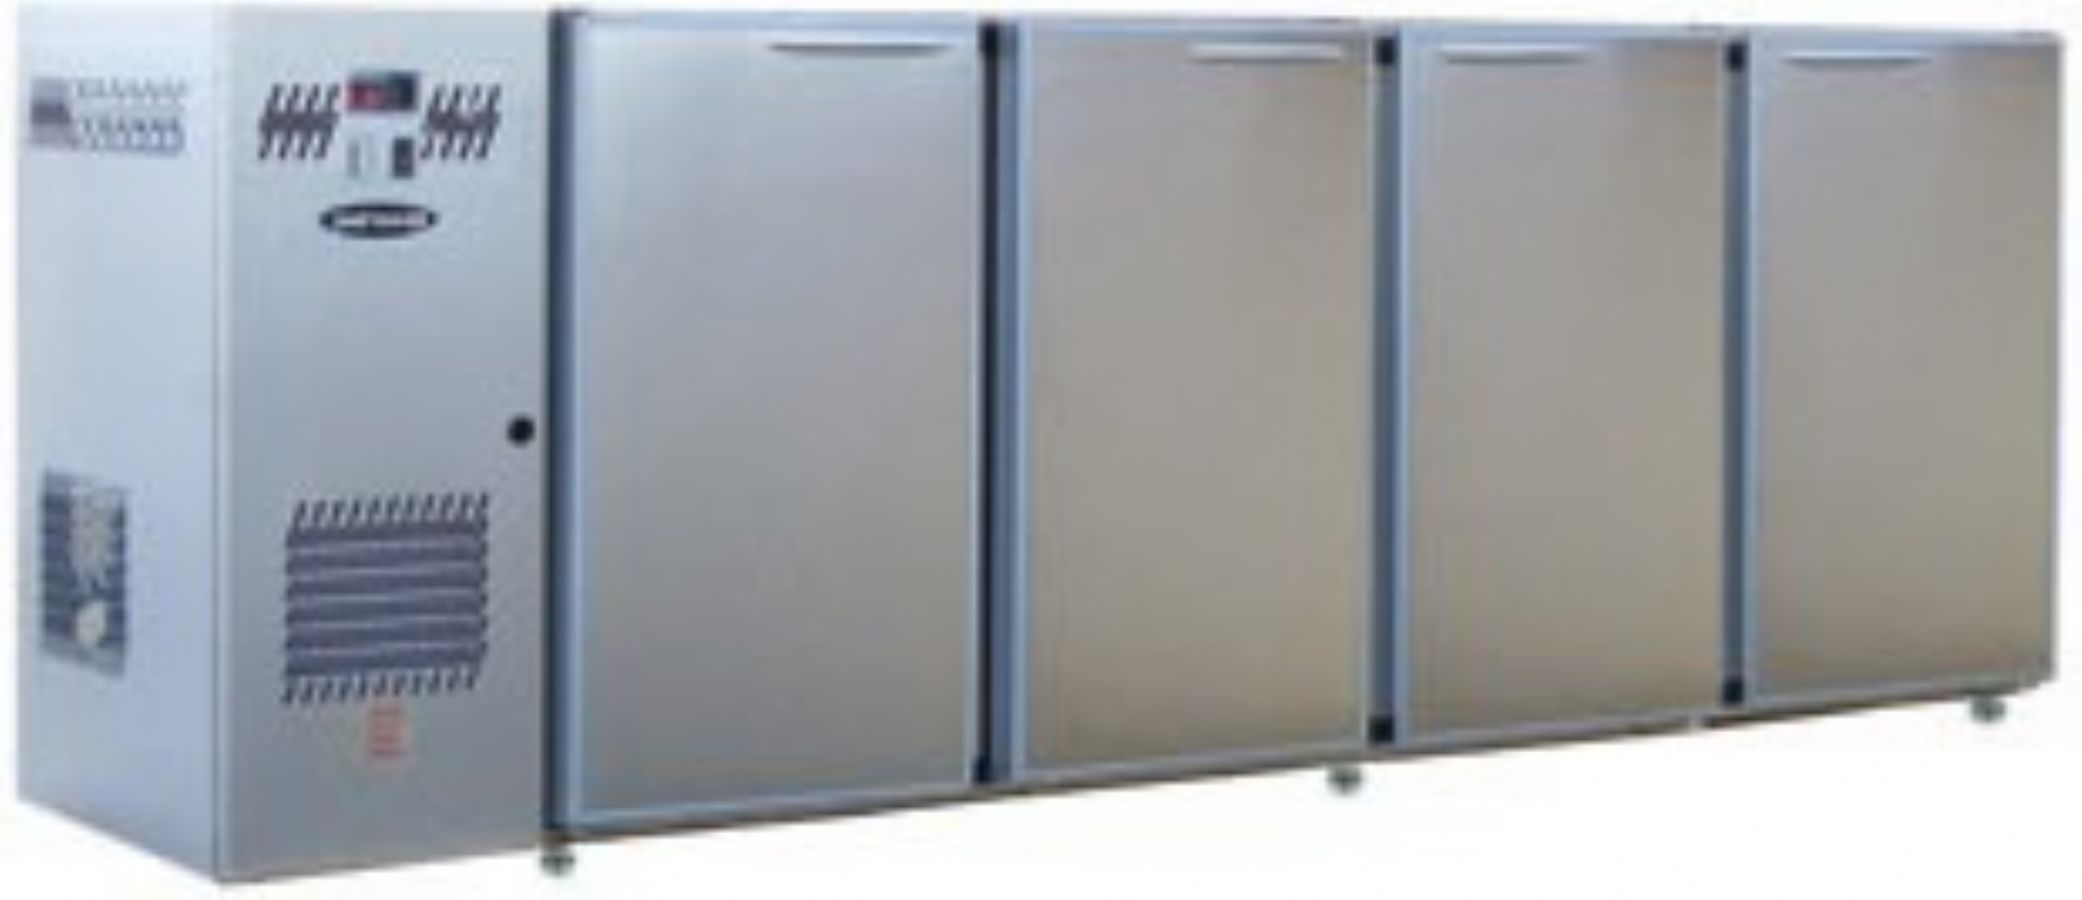 Arrire-bar Inox - Srie CLASSIC - Groupe log - 4 larges portes pleines - 967 litres - U74LI